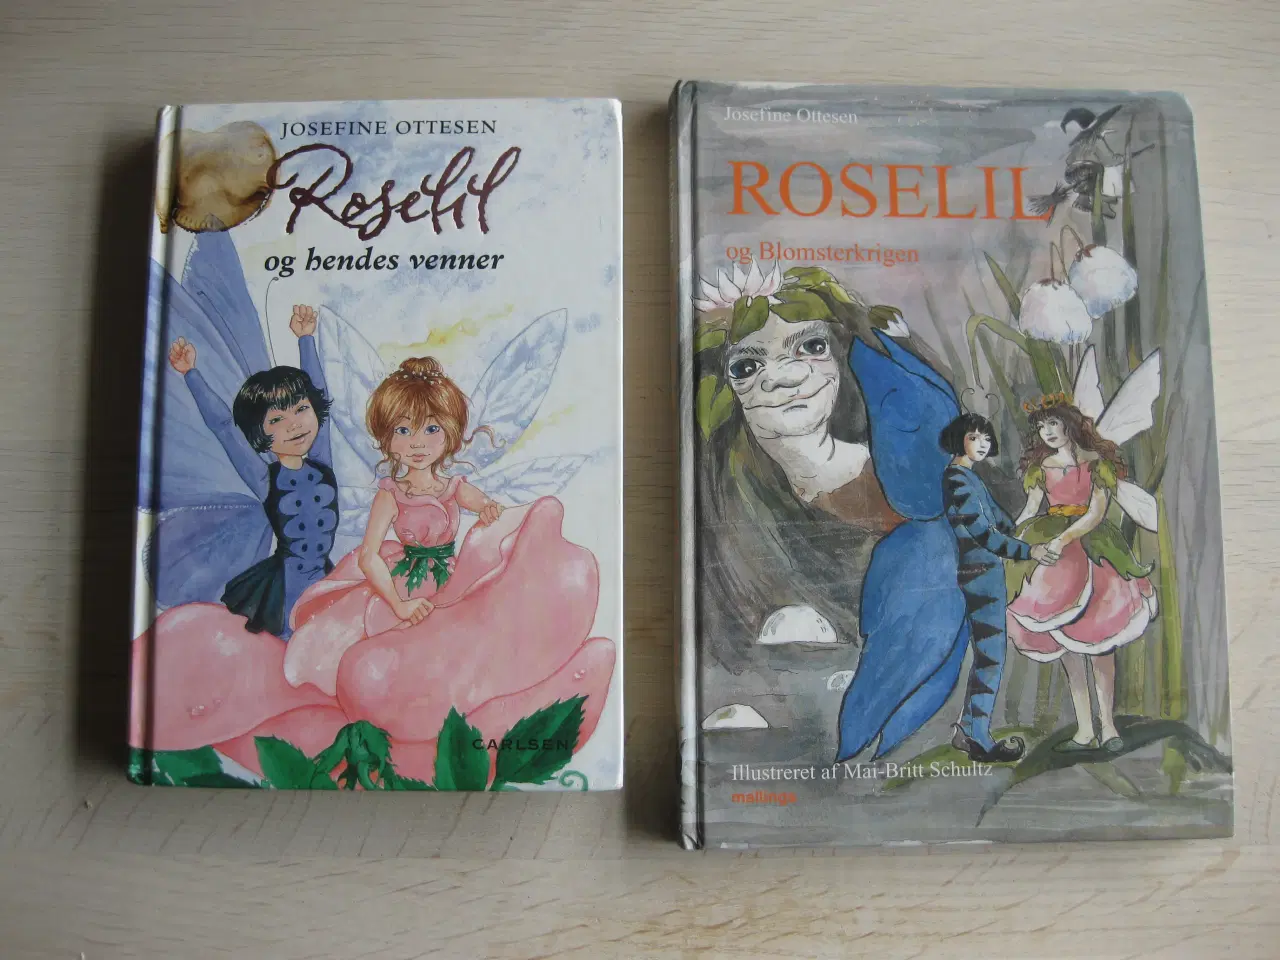 Billede 1 - "Roselil" bøger af Josefine Ottesen ;-)